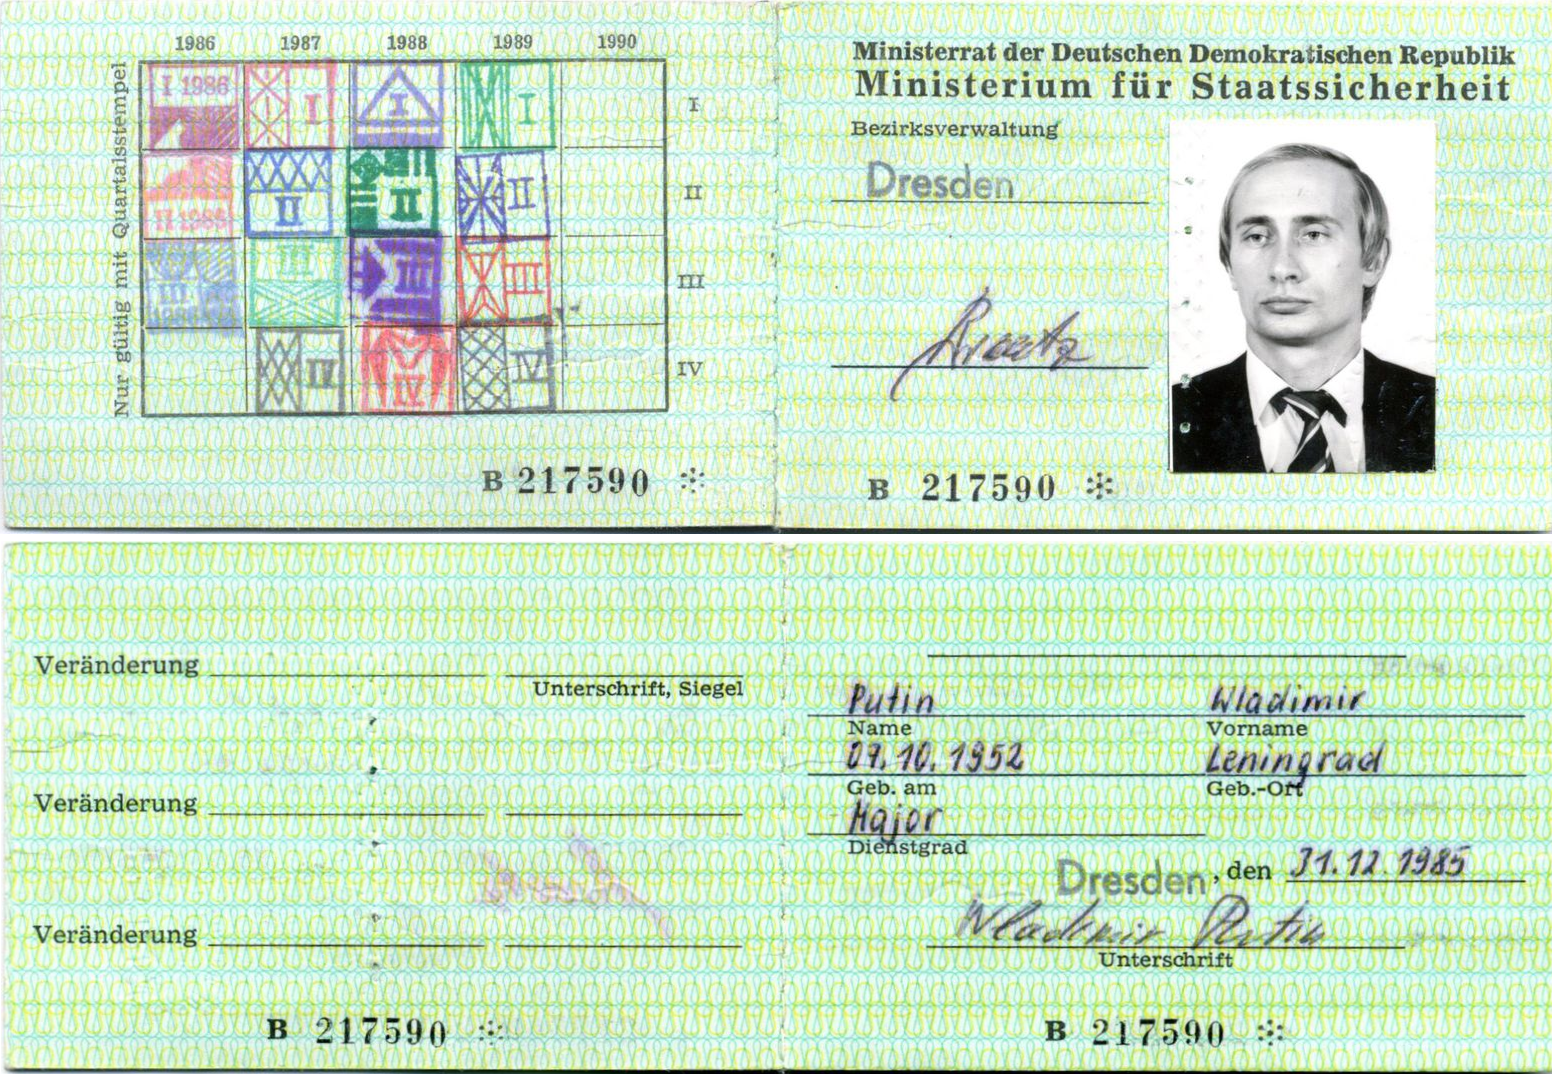 Putin's Passport 